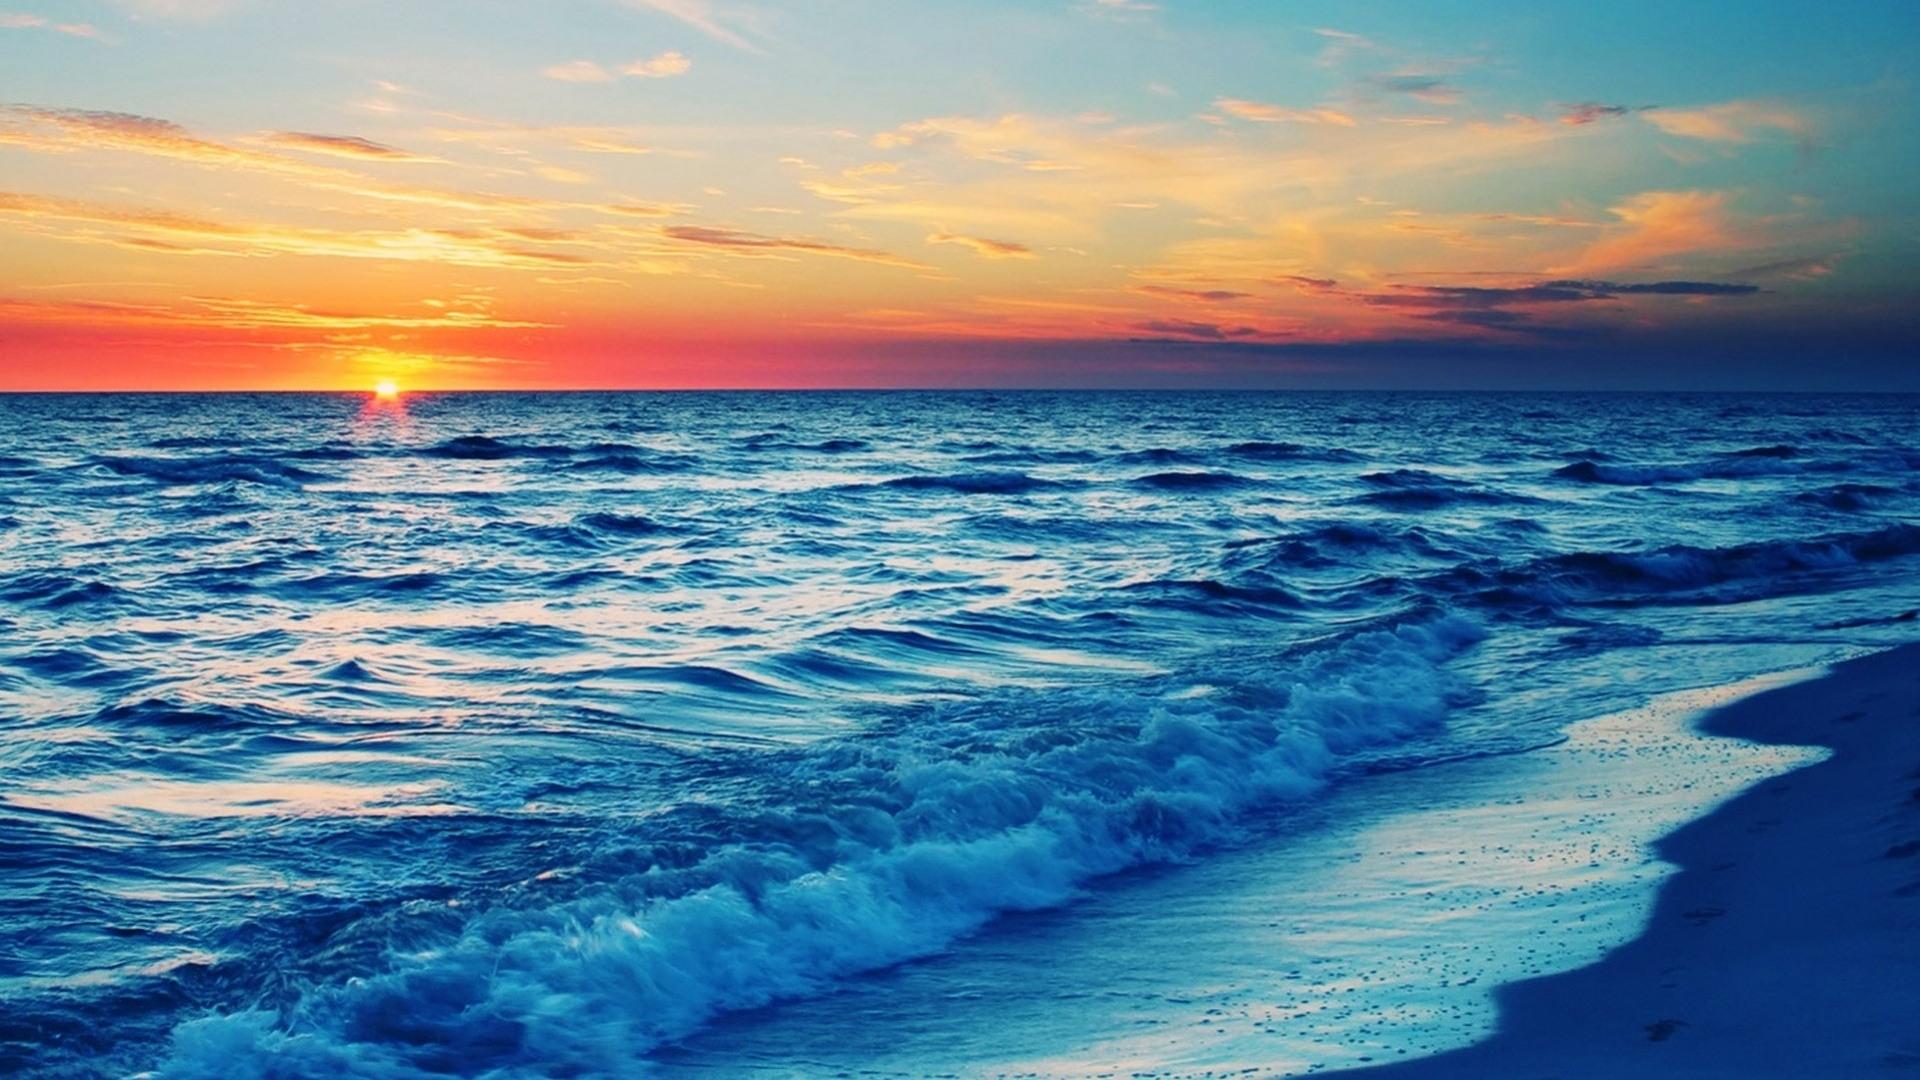 落日下美丽海滩风景桌面壁纸-壁纸图片大全